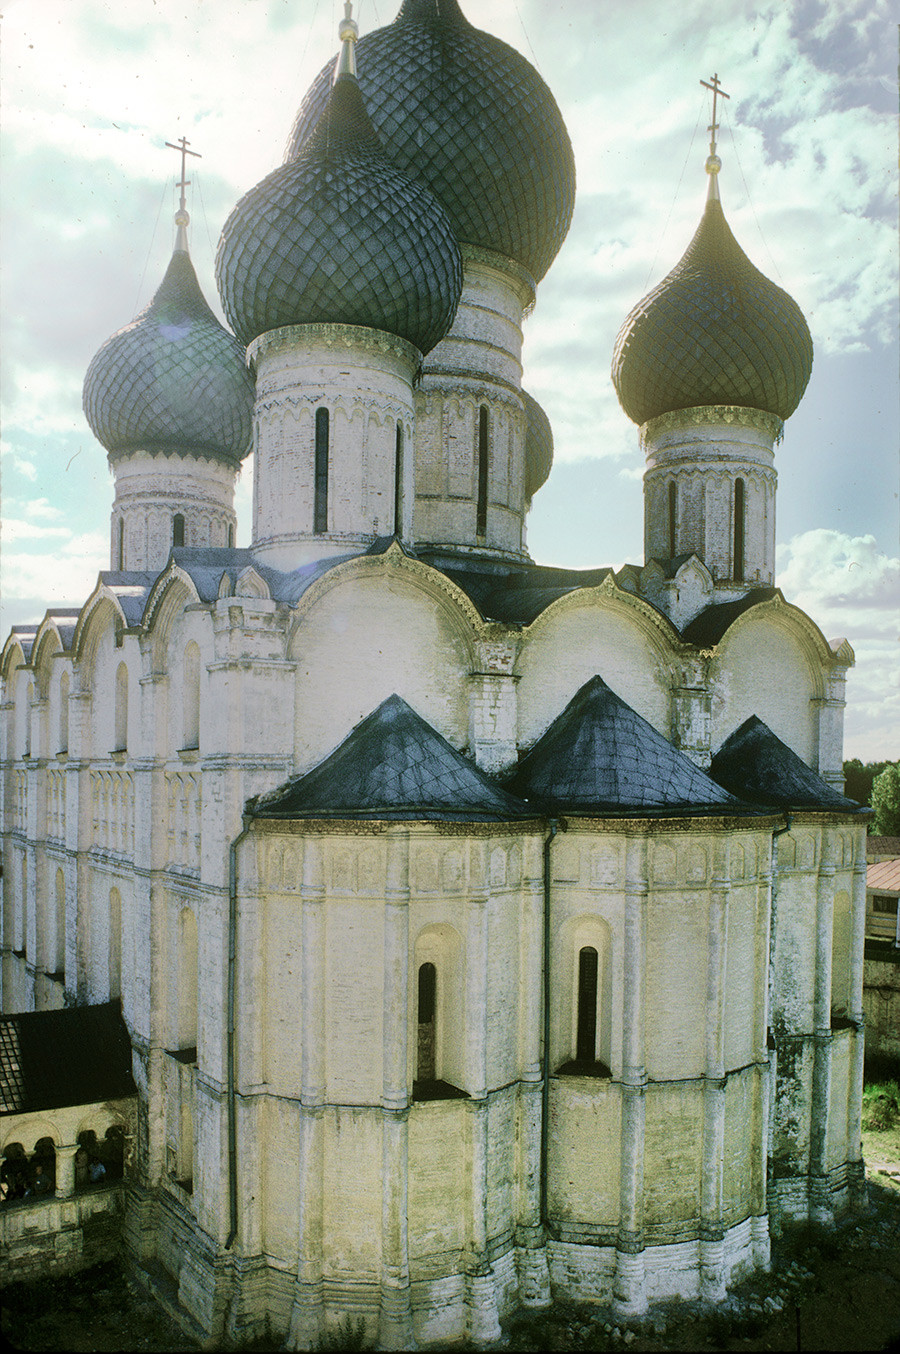 ウスペンスキー聖堂。鐘楼から南東を望む。1995年6月28日。